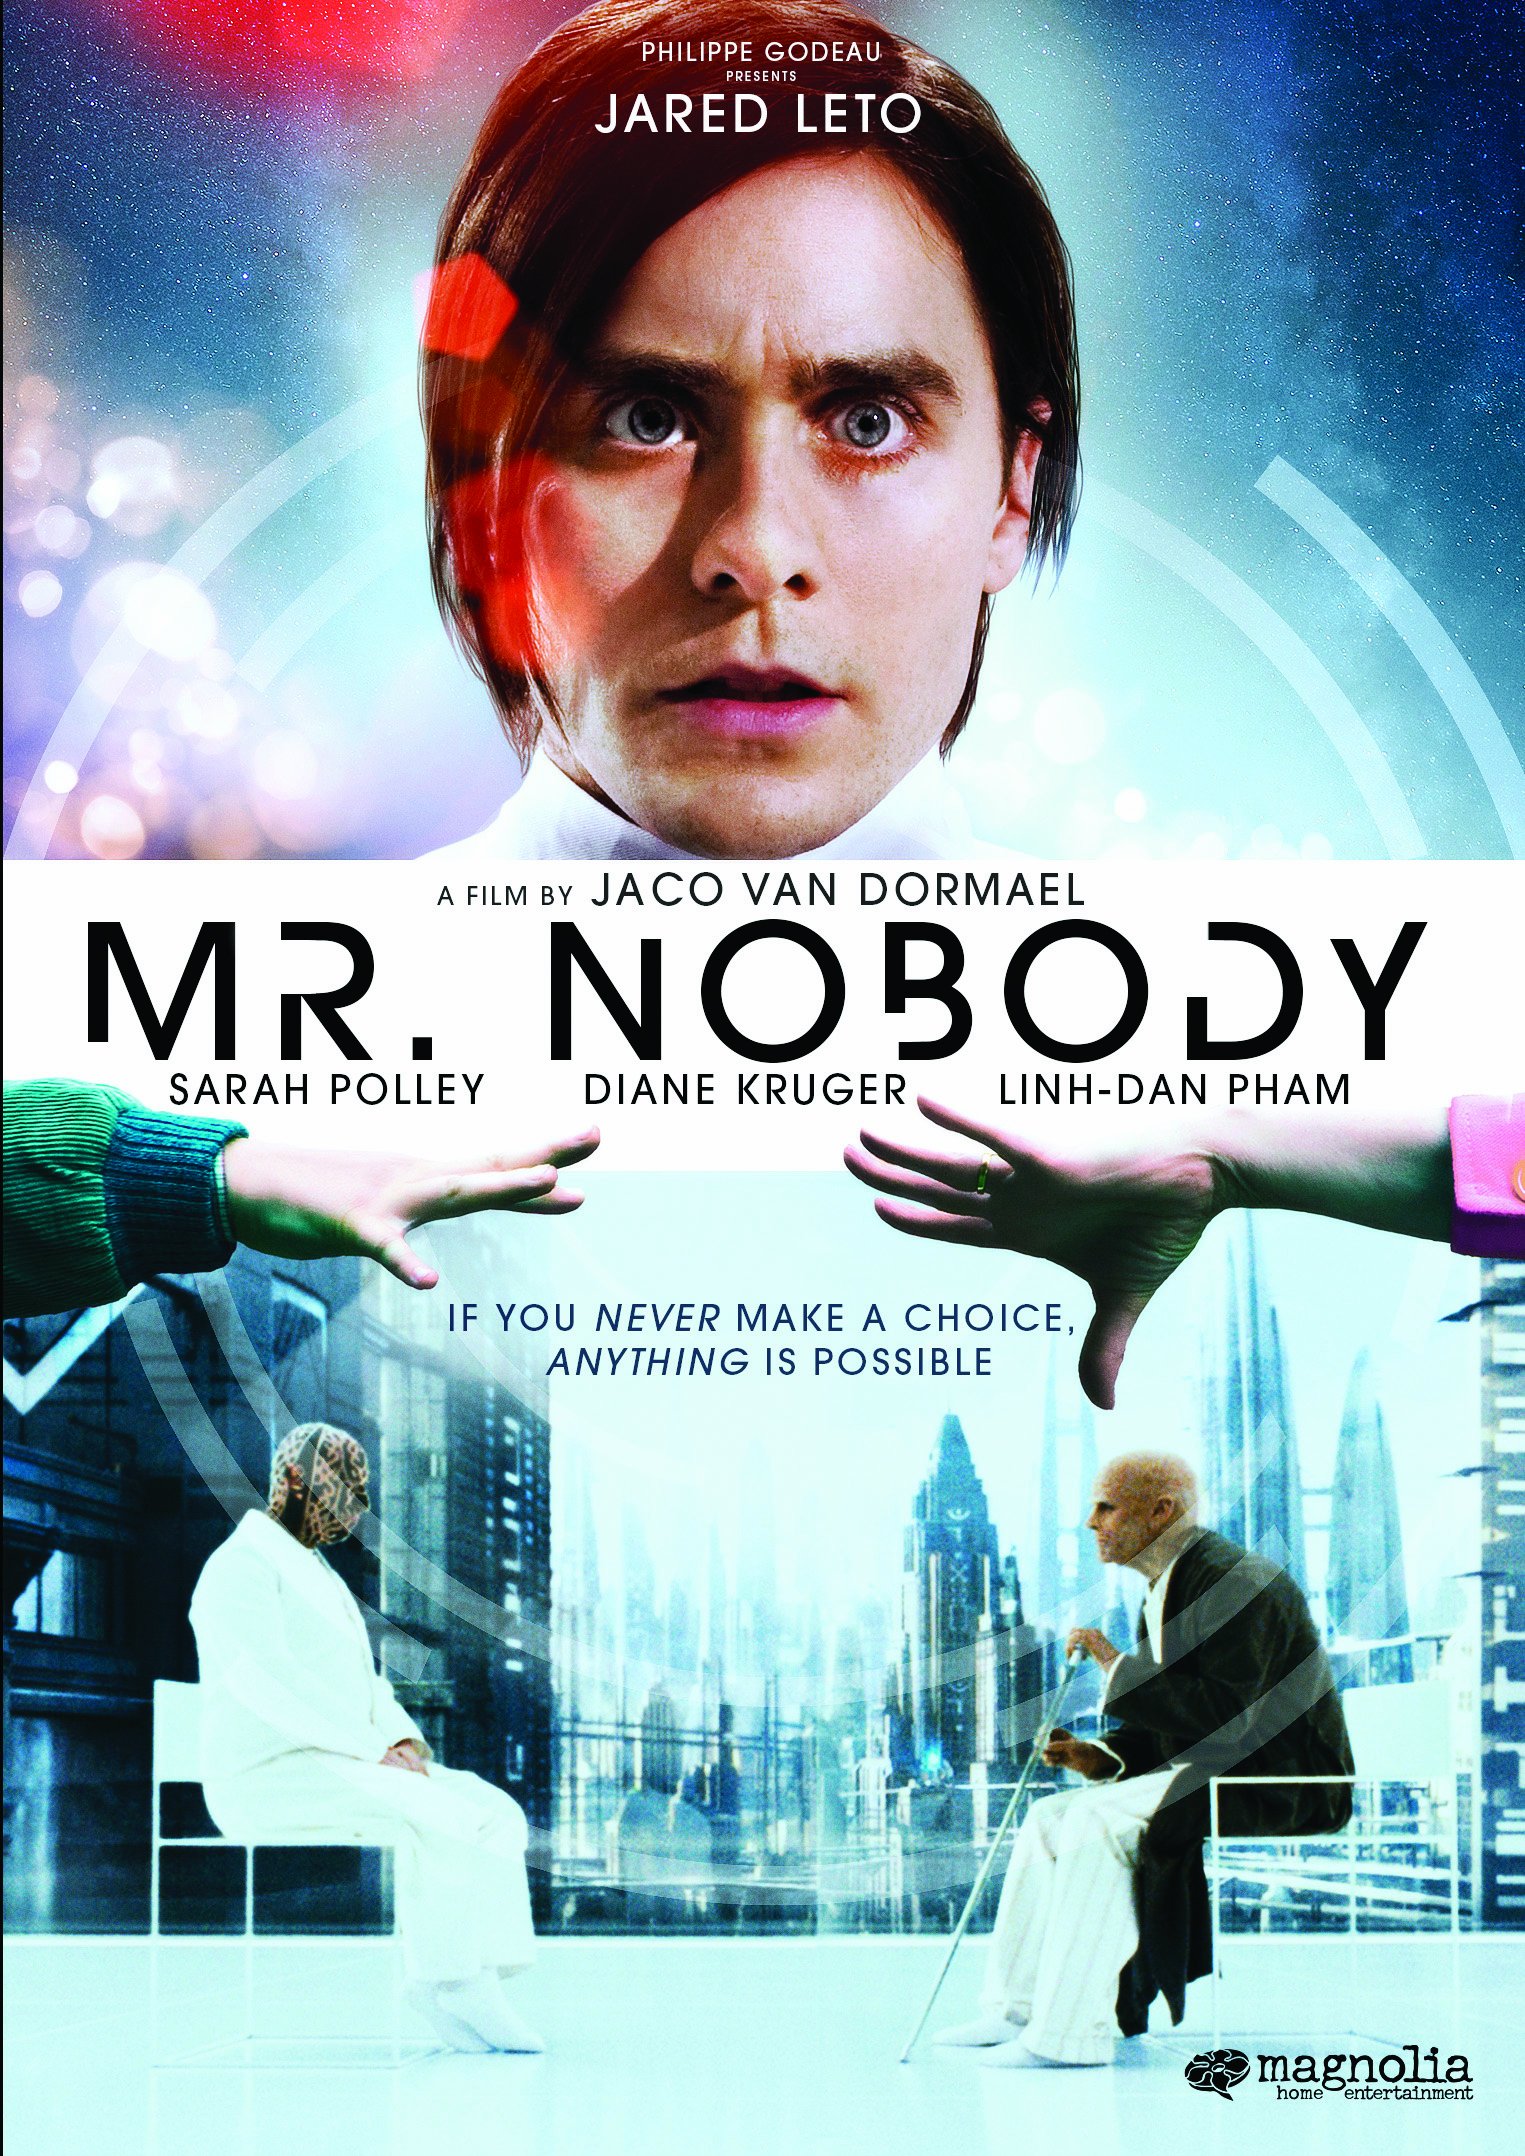 Van Dormael: Mr. Nobody (2010). I Ciclo de Filosofía y Cine. – Aula de Filosofía de Eugenio Sánchez Bravo. 2001-2022.